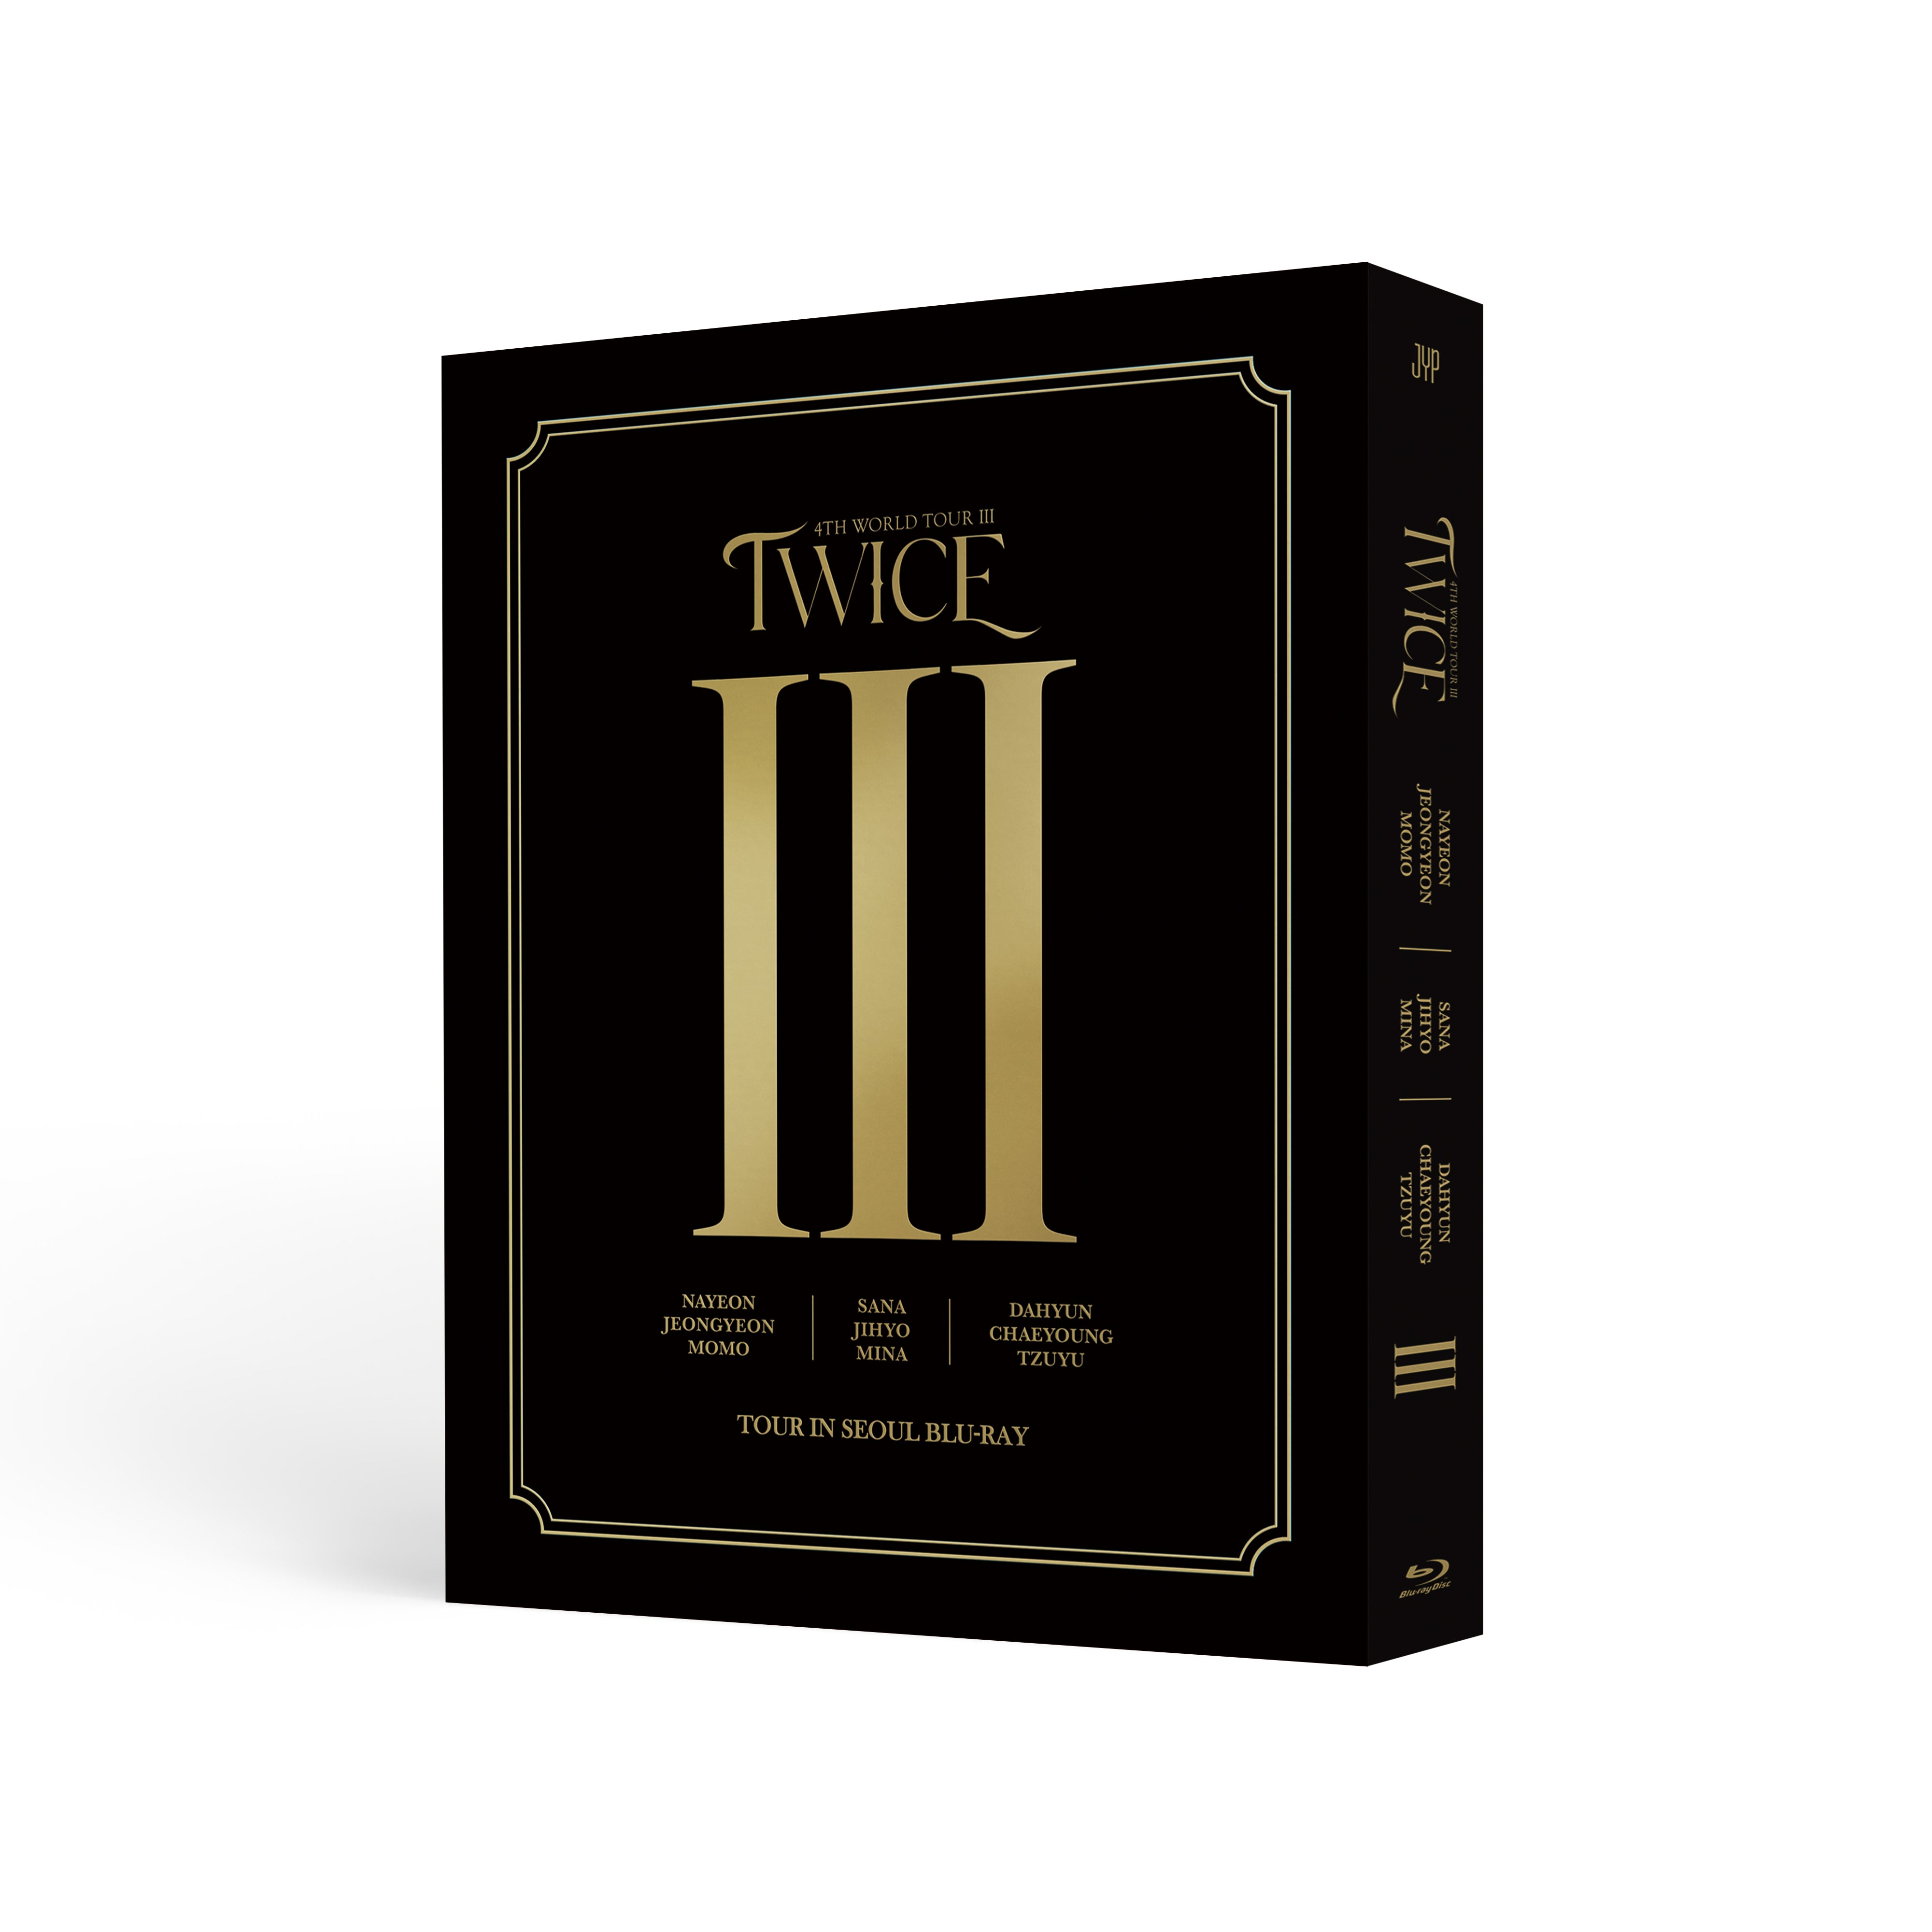 TWICE - TWICE 4TH WORLD TOUR Ⅲ IN SEOUL Blu-ray